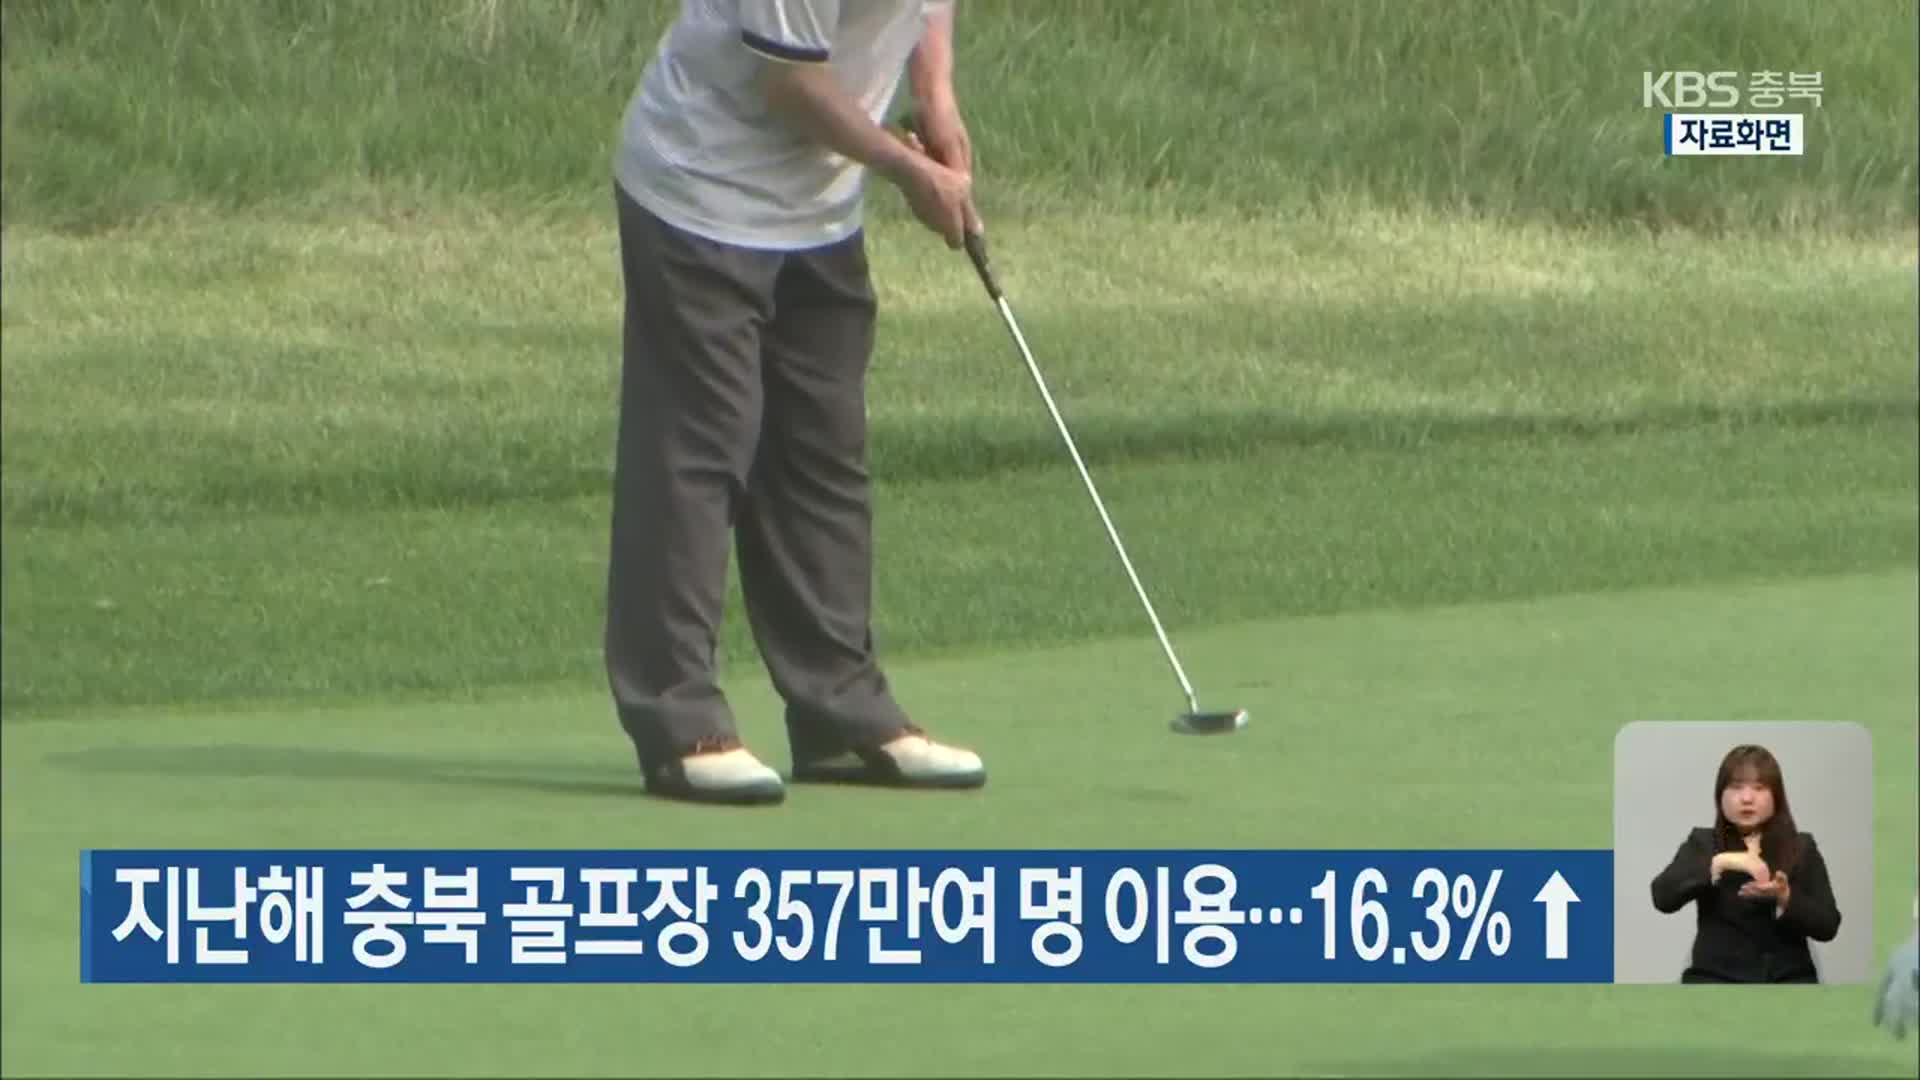 지난해 충북 골프장 357만여 명 이용…16.3%↑